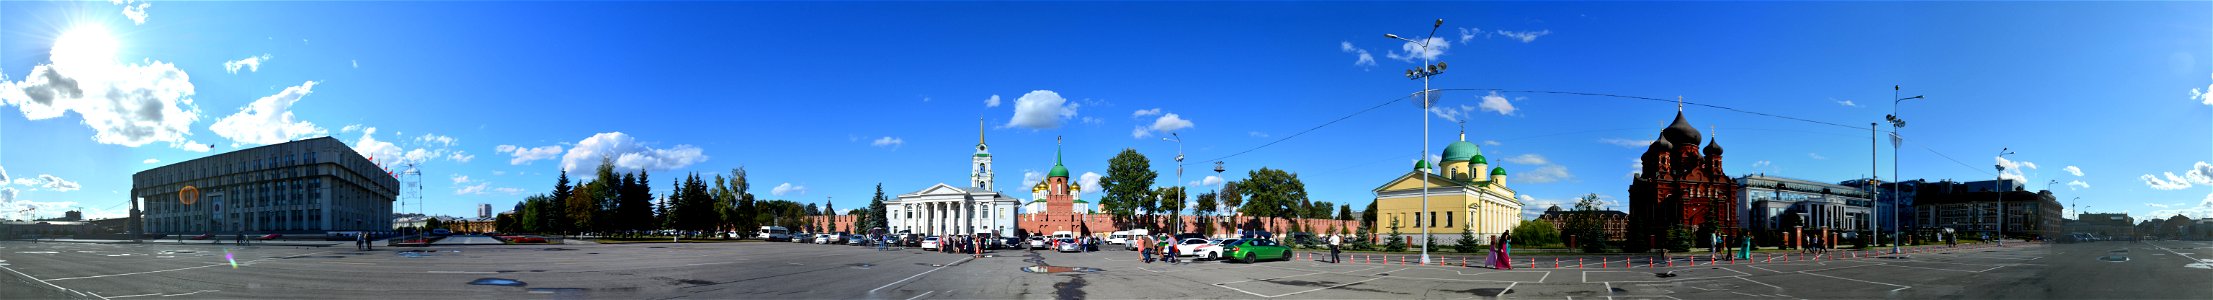 Square next to Tula Kremlin